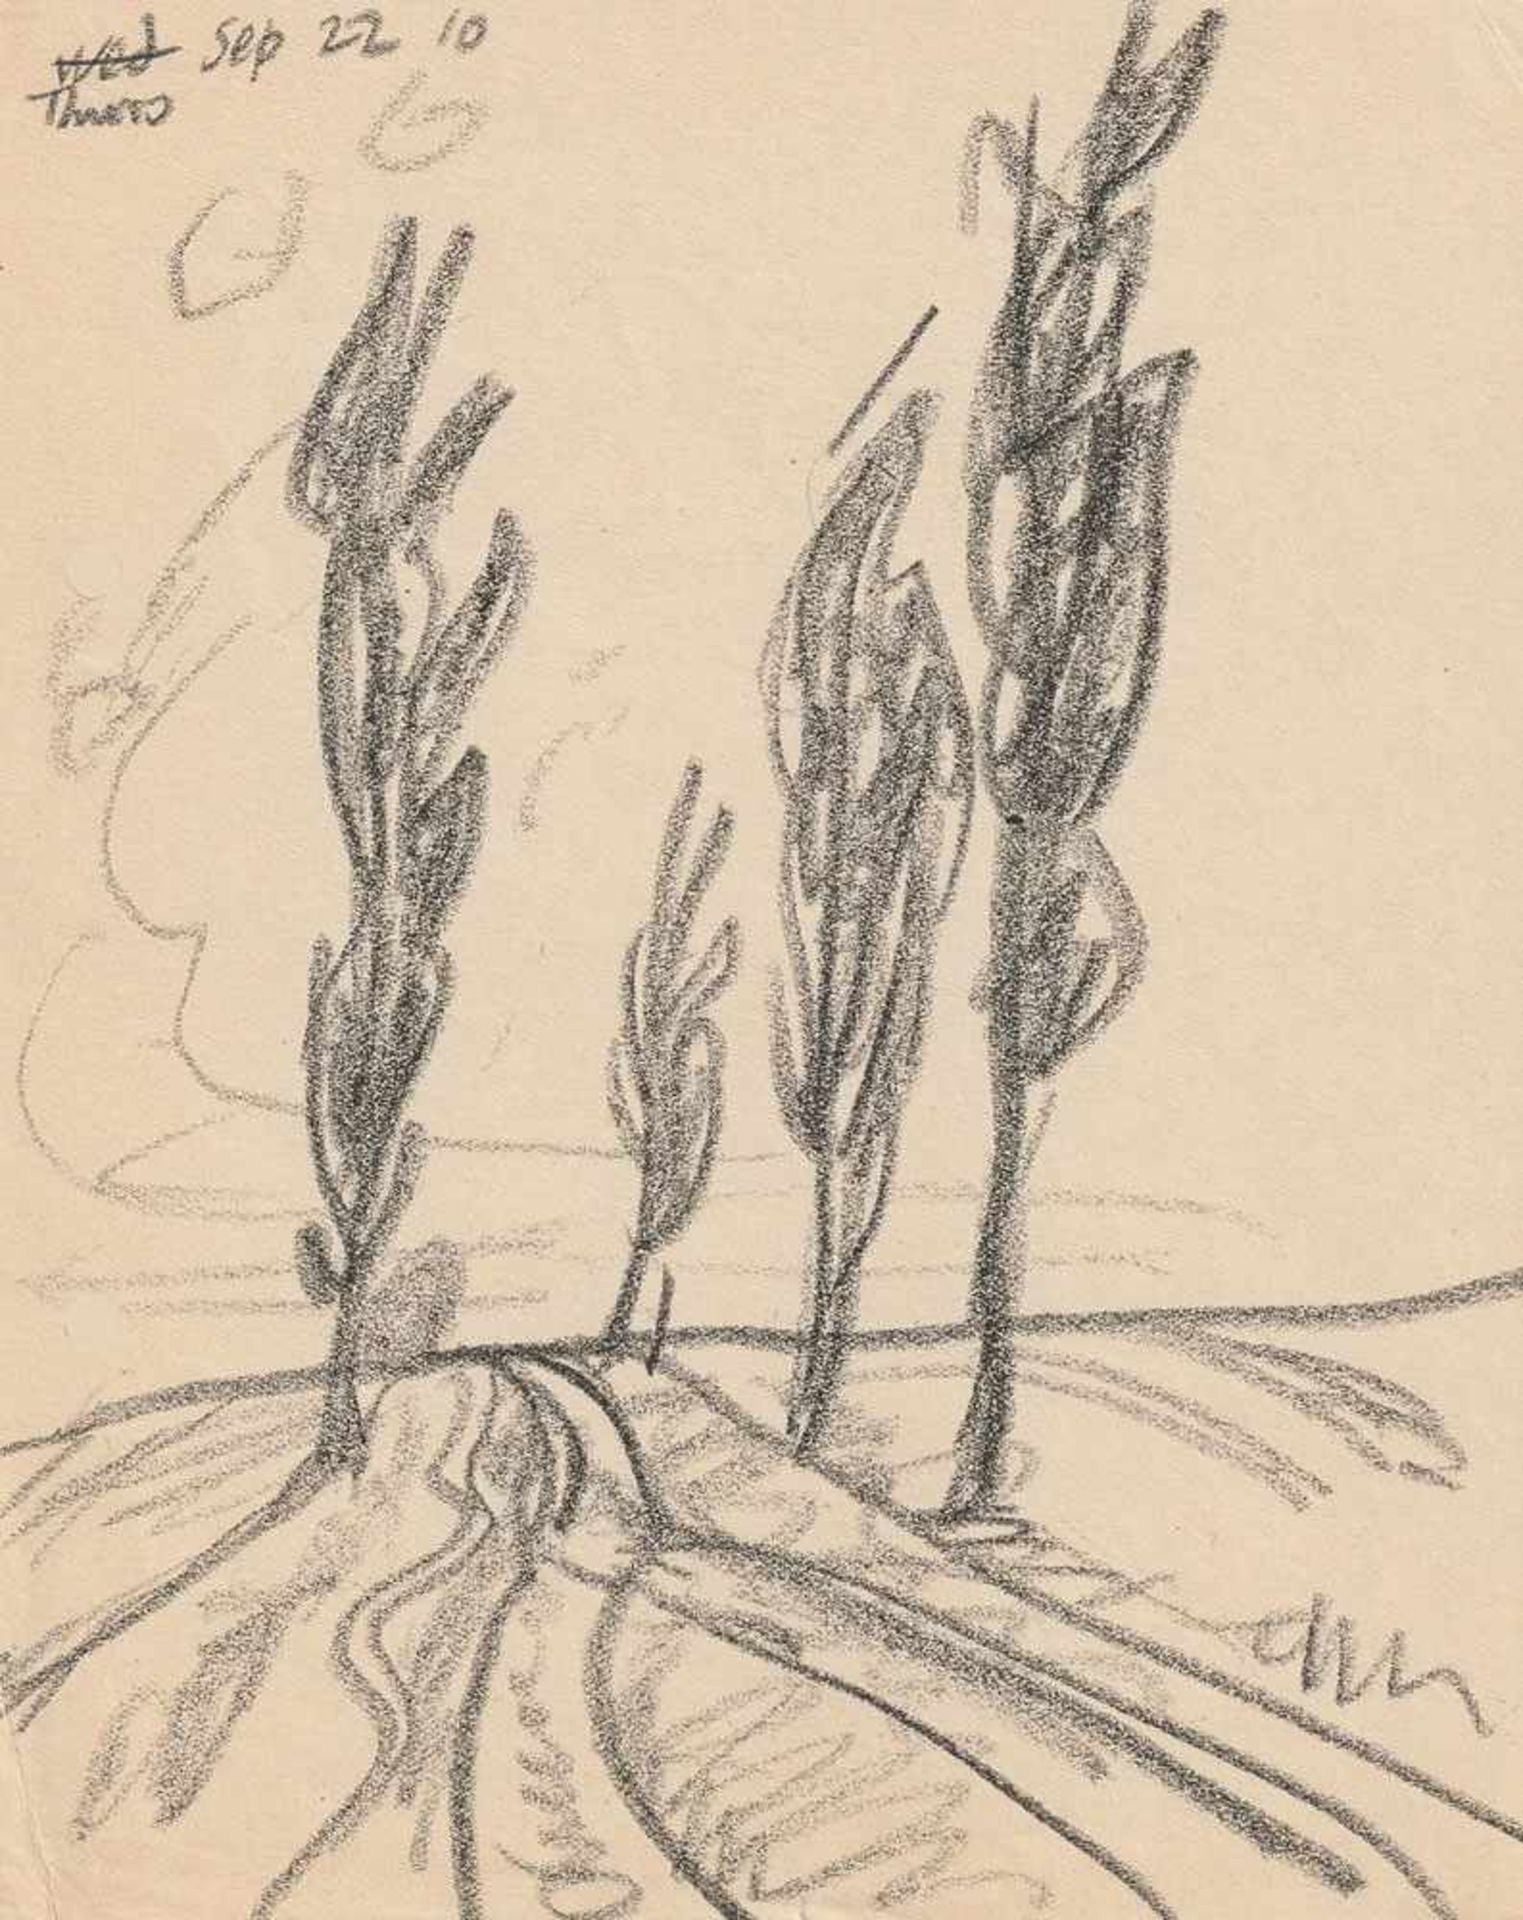 Lyonel Feininger (1871 - New York - 1956) Landstraße mit Bäumen, Neppermin. Bleisiftzeichnung.